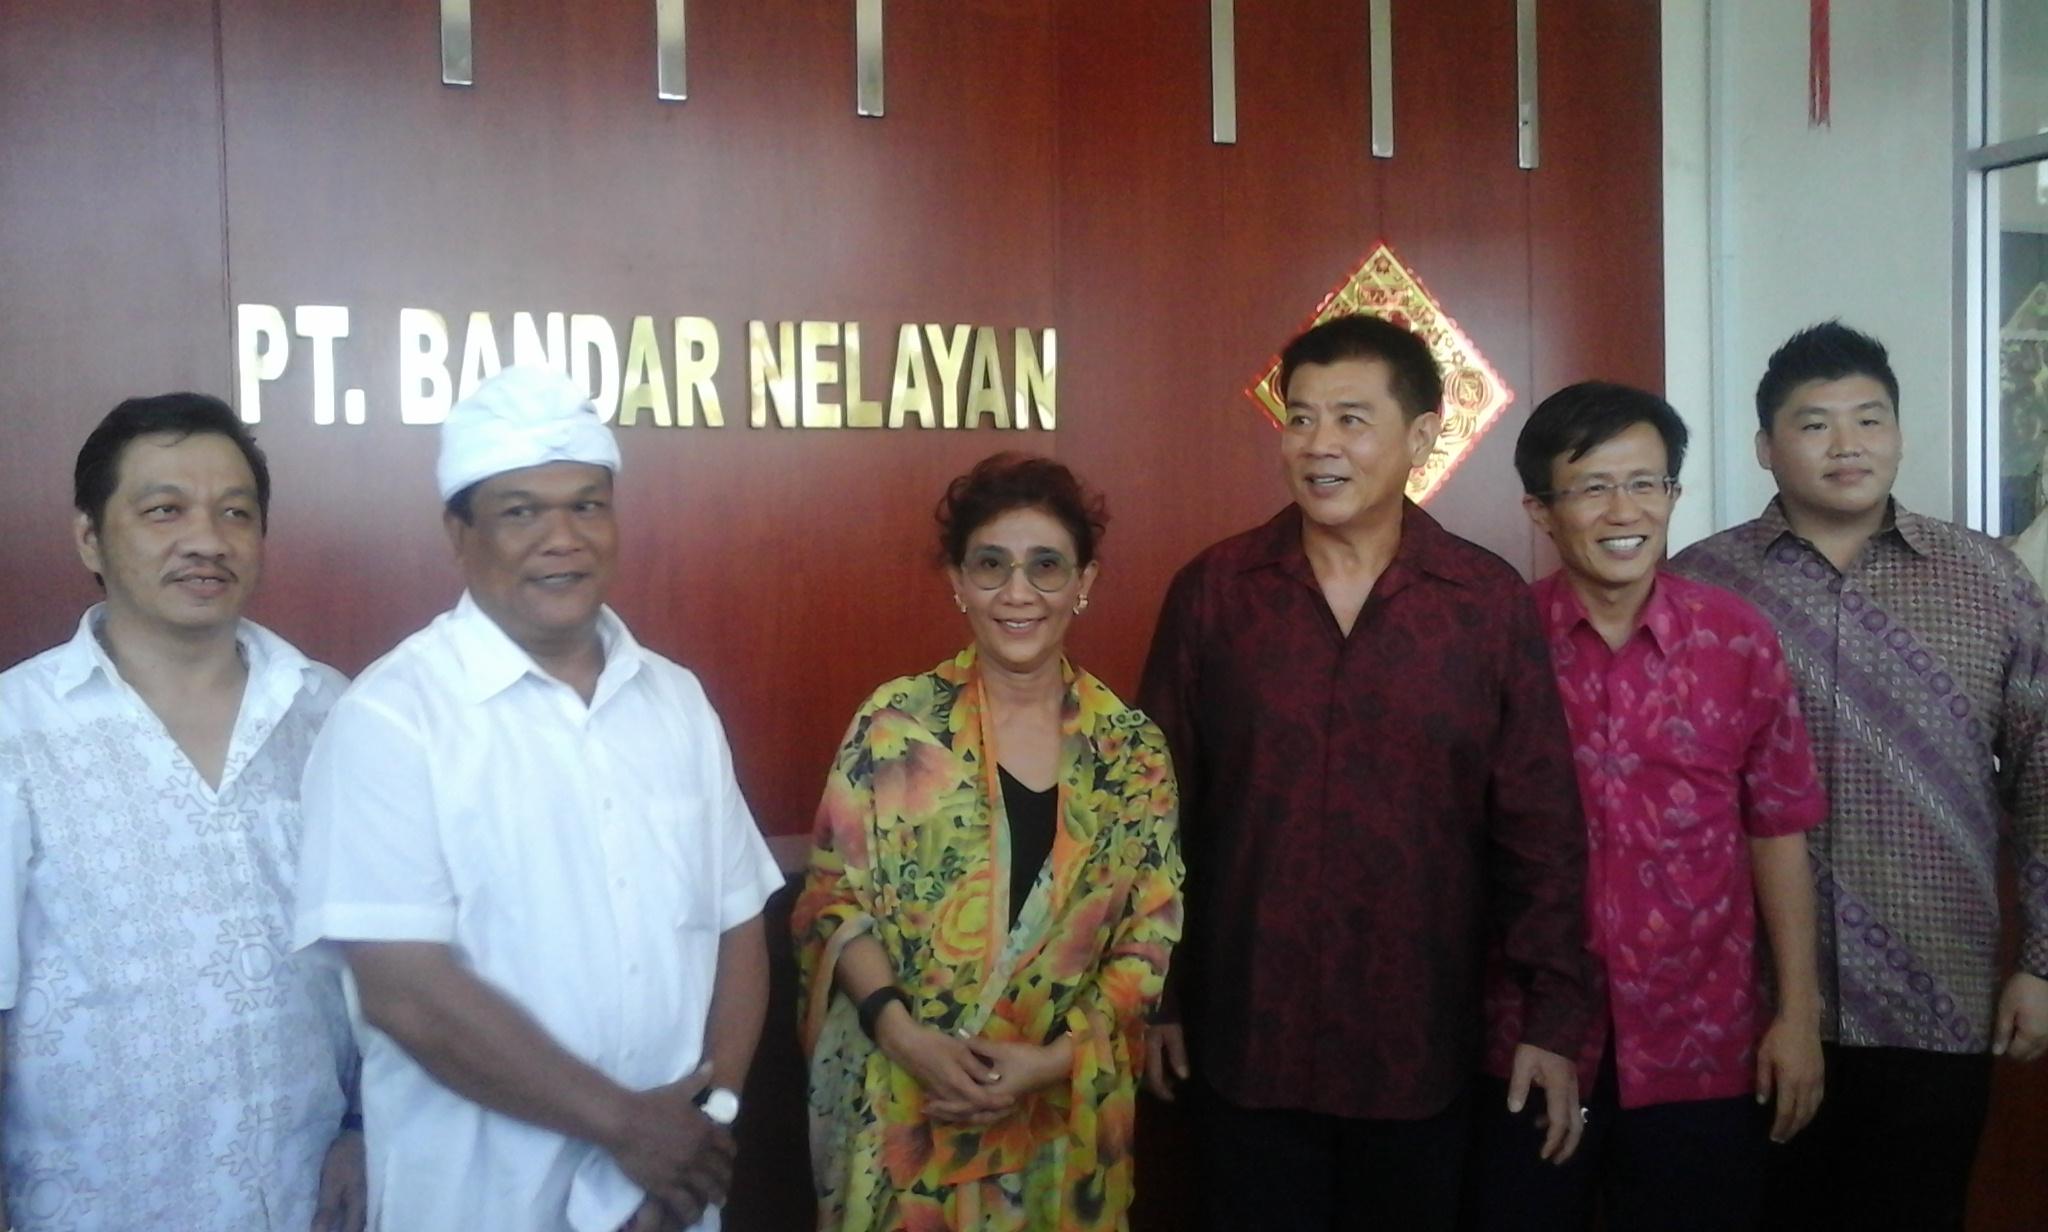 Menteri Susi Bantu Jaring Nelayan Bali